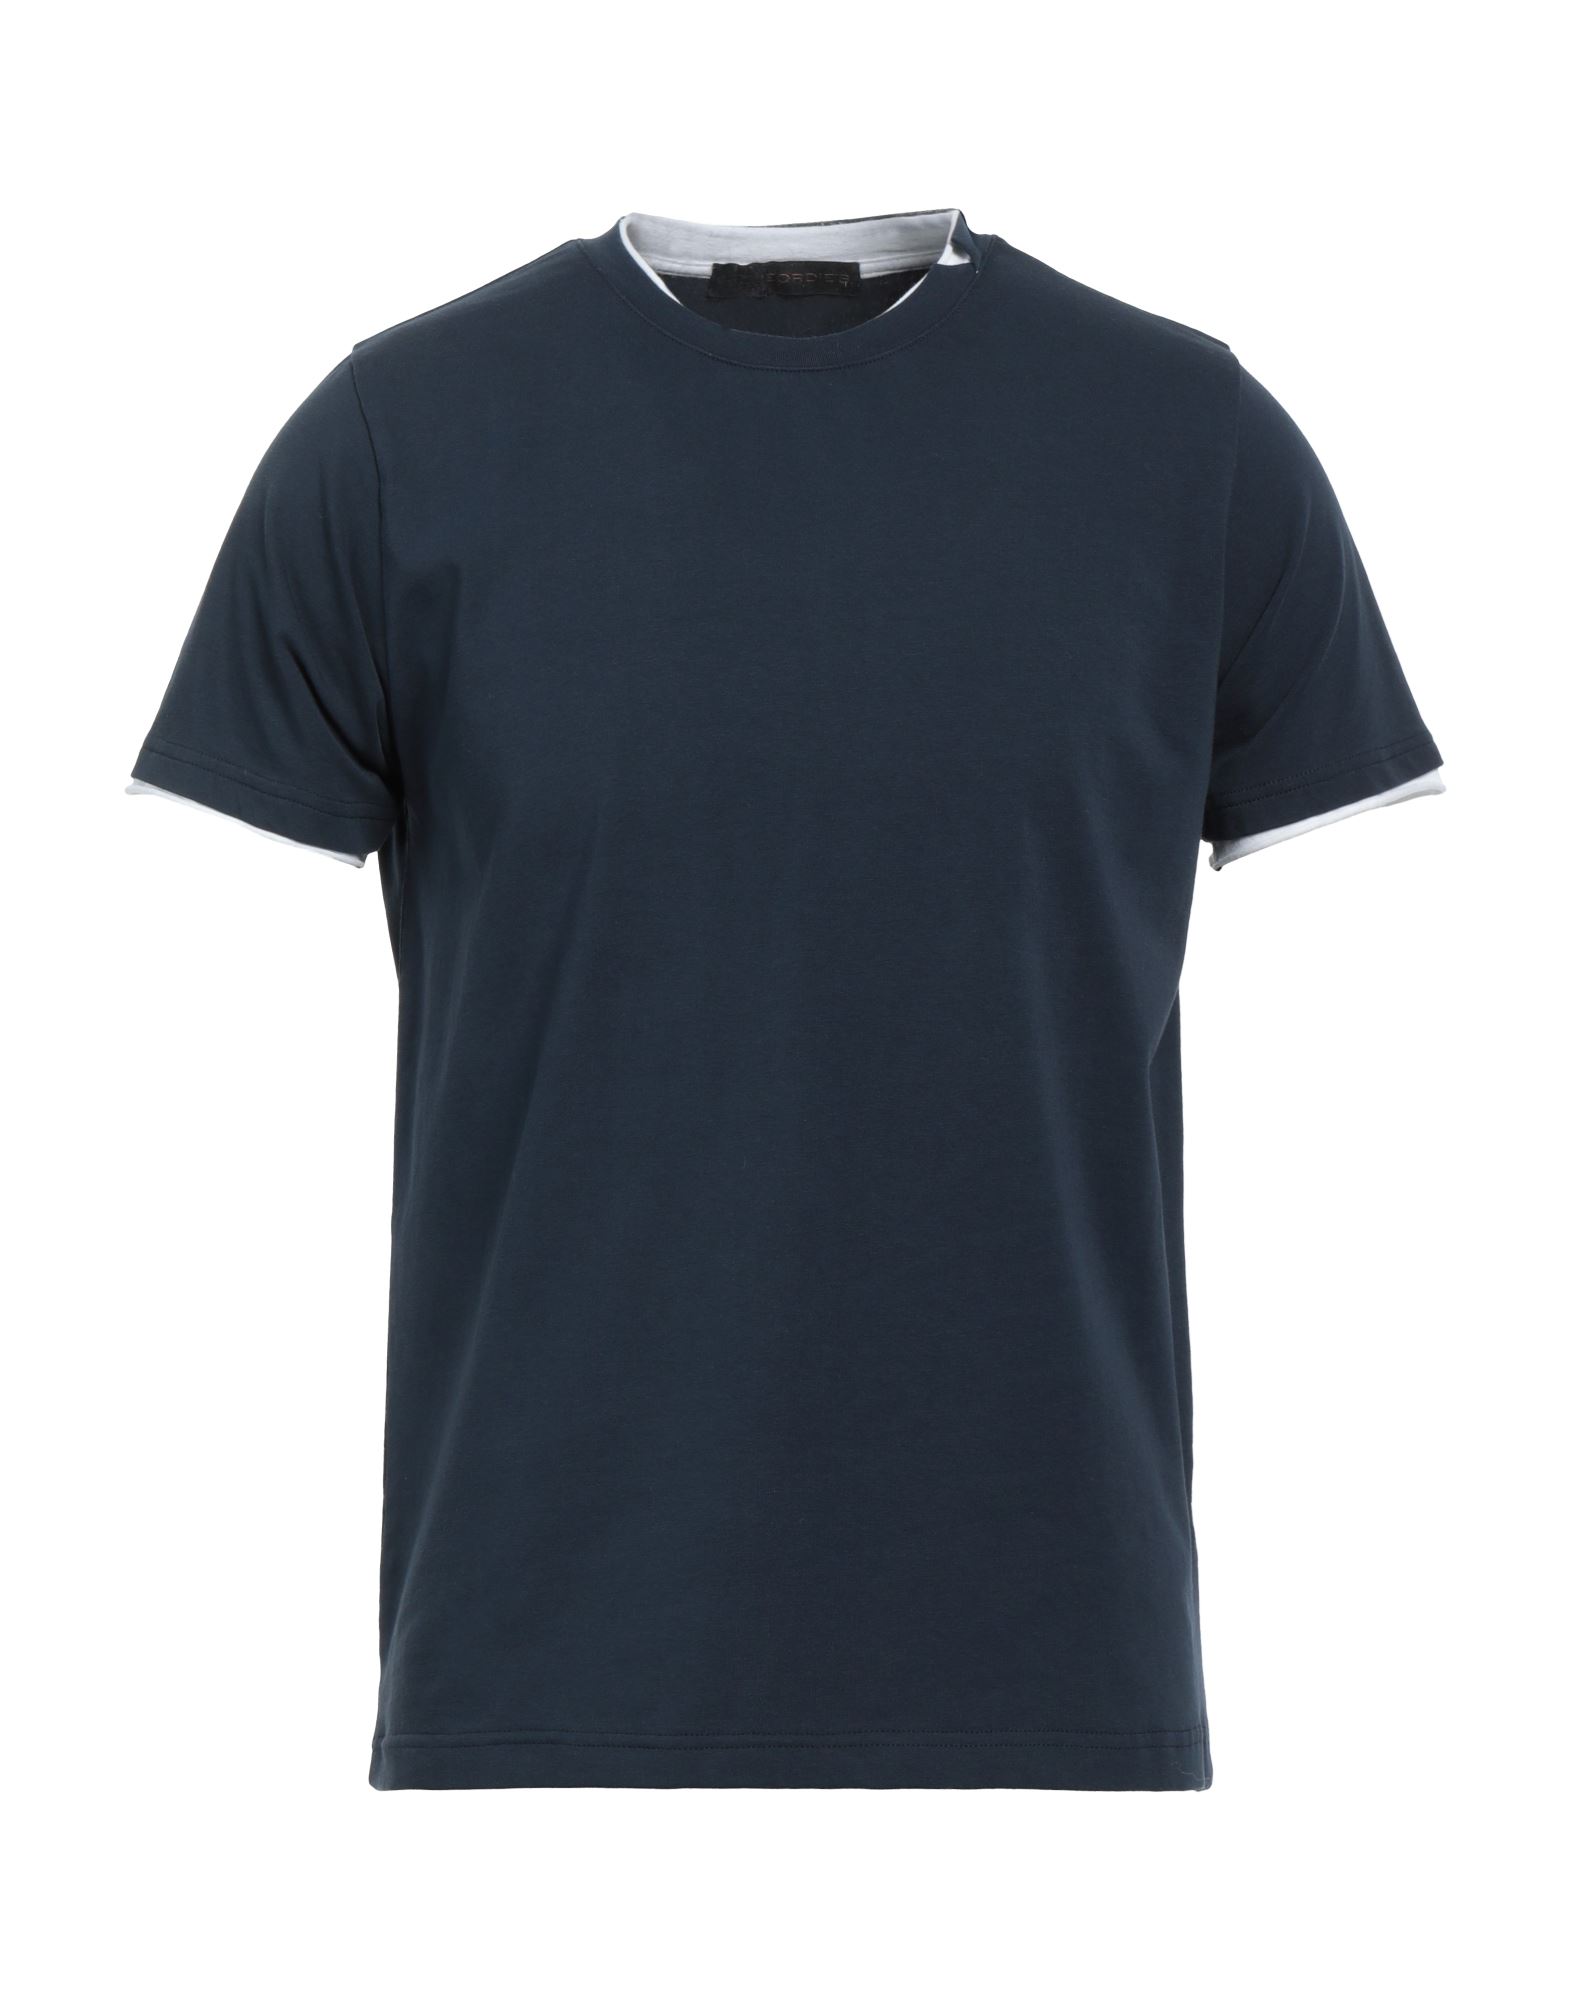 Jeordie's Man T-shirt Midnight Blue Size 3xl Cotton, Elastane